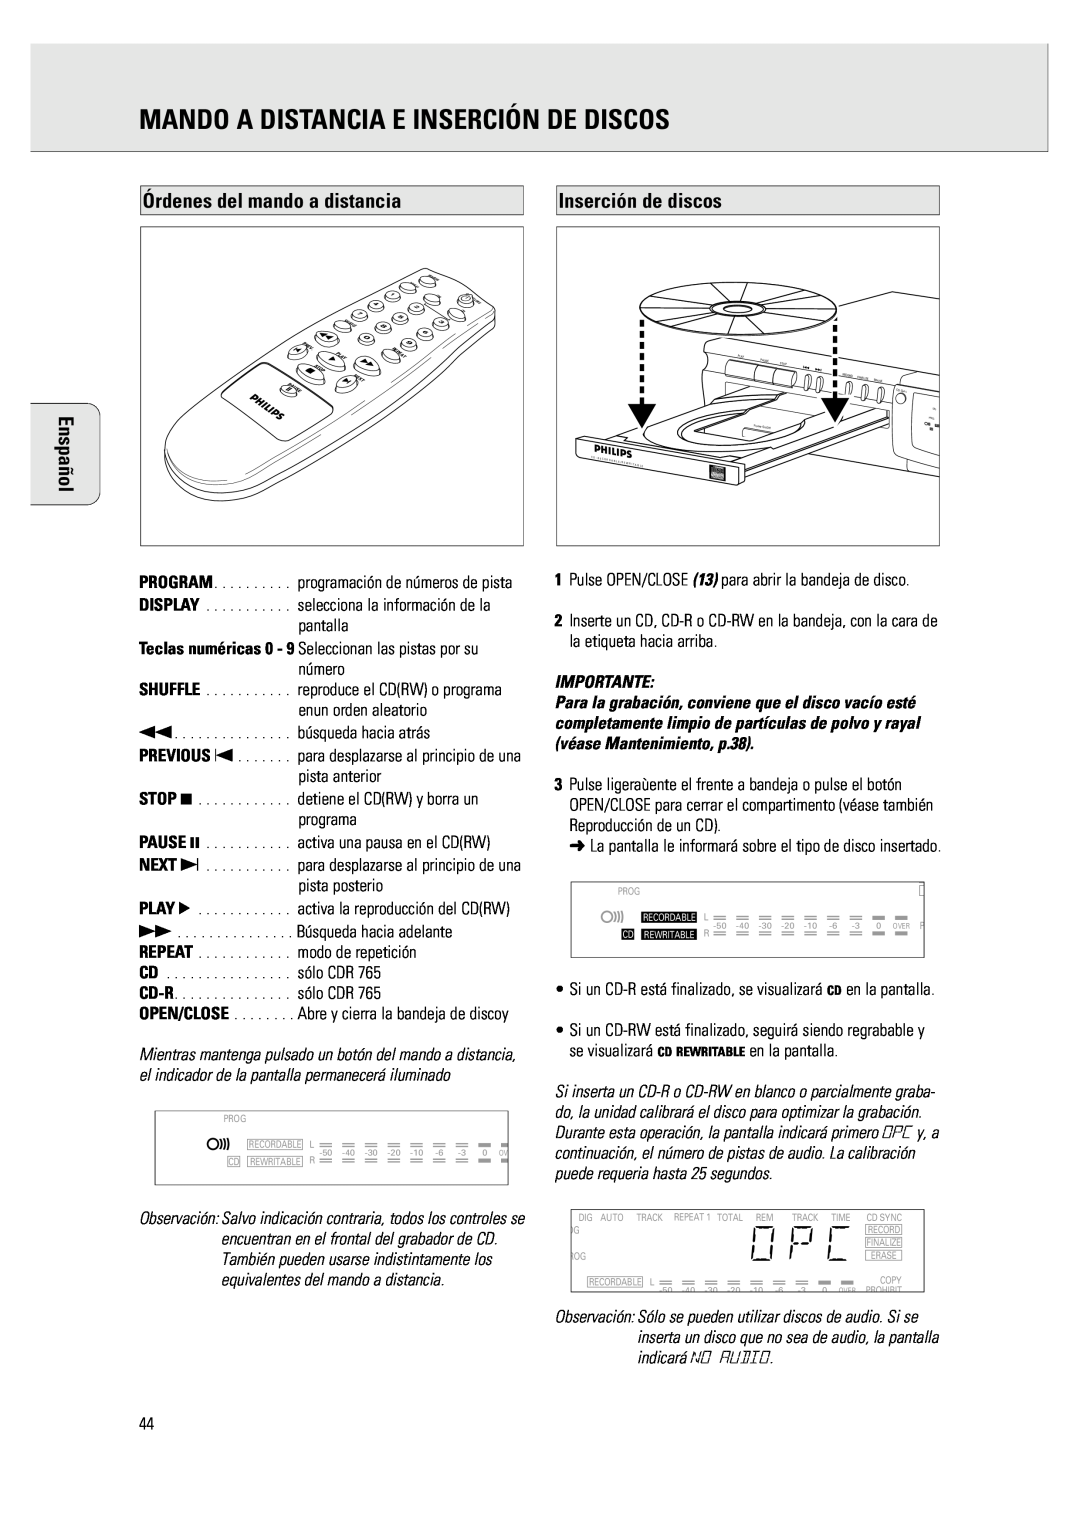 Philips CDR 760 manual Mando A Distancia E Inserción De Discos, Órdenes del mando a distancia, Inserción de discos, Shuffle 